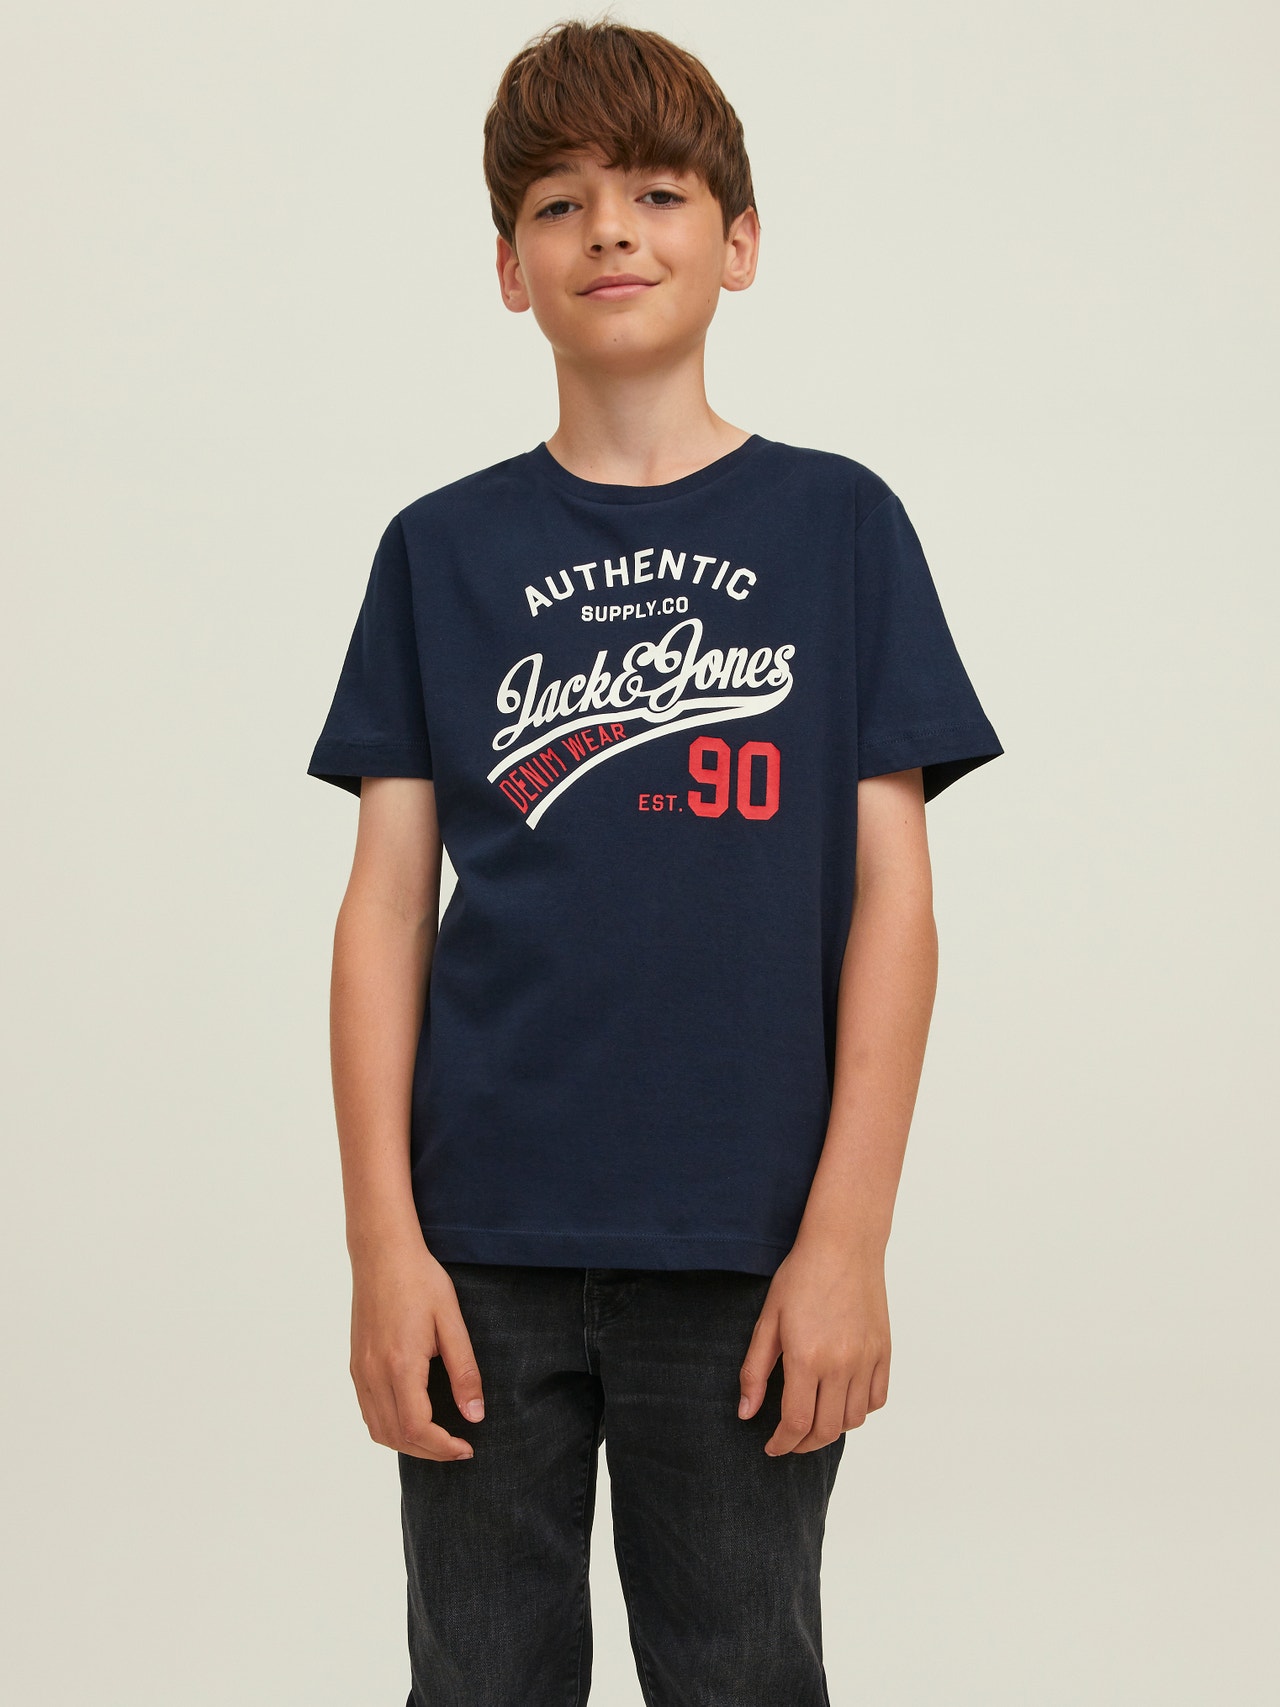 Jack & Jones Confezione da 3 T-shirt Con logo Per Bambino -Black - 12222425